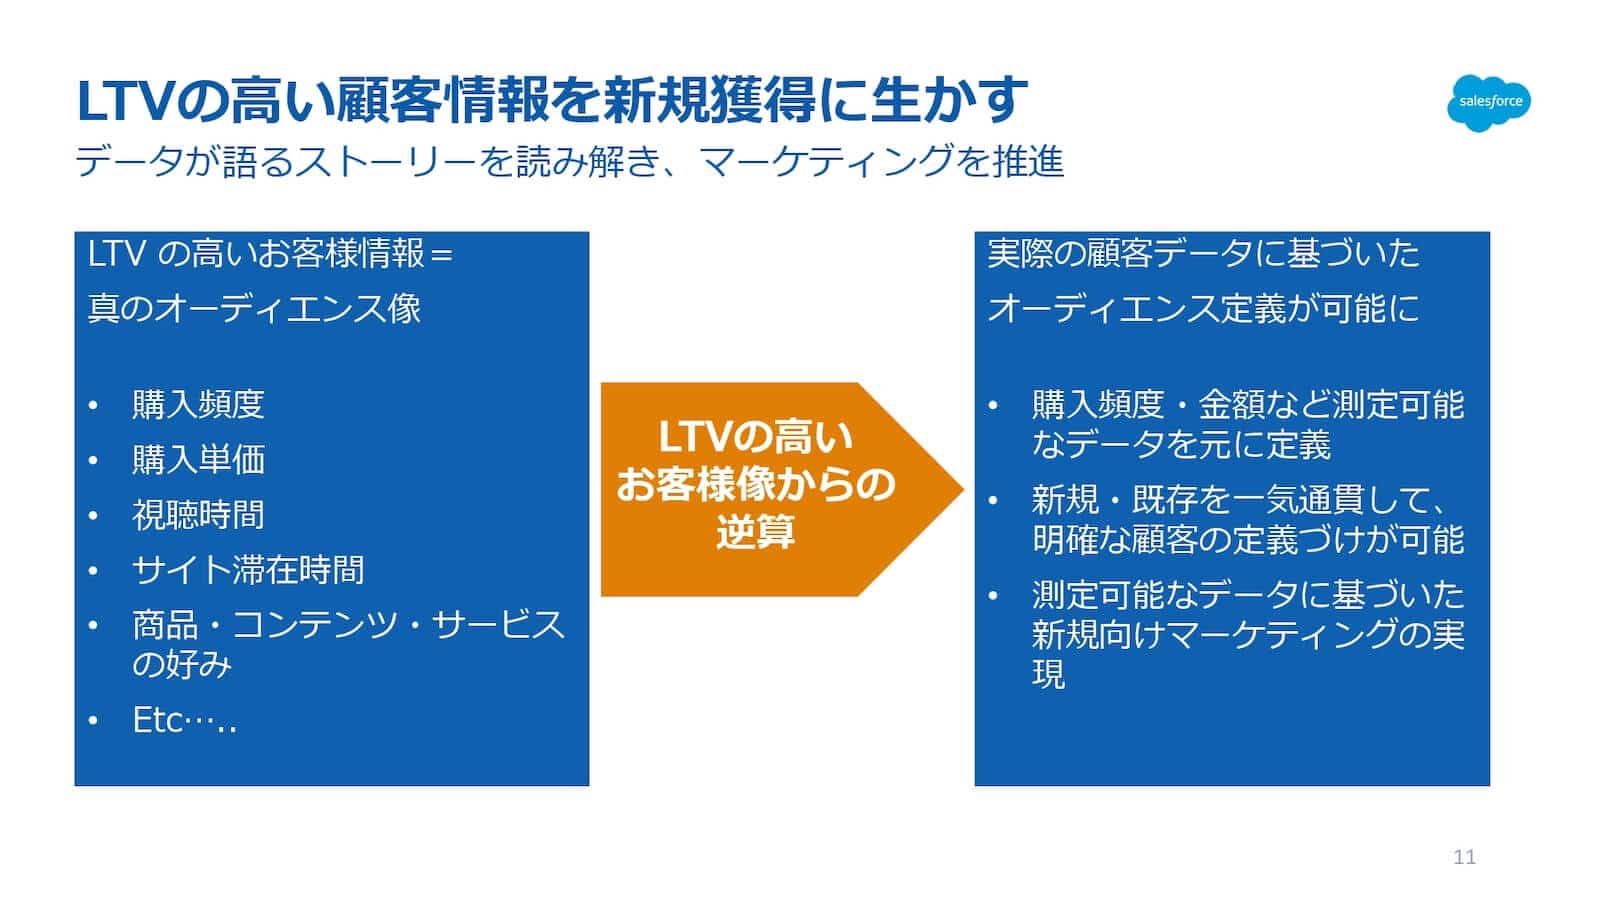 LTVが高い顧客情報を新規獲得に生かす